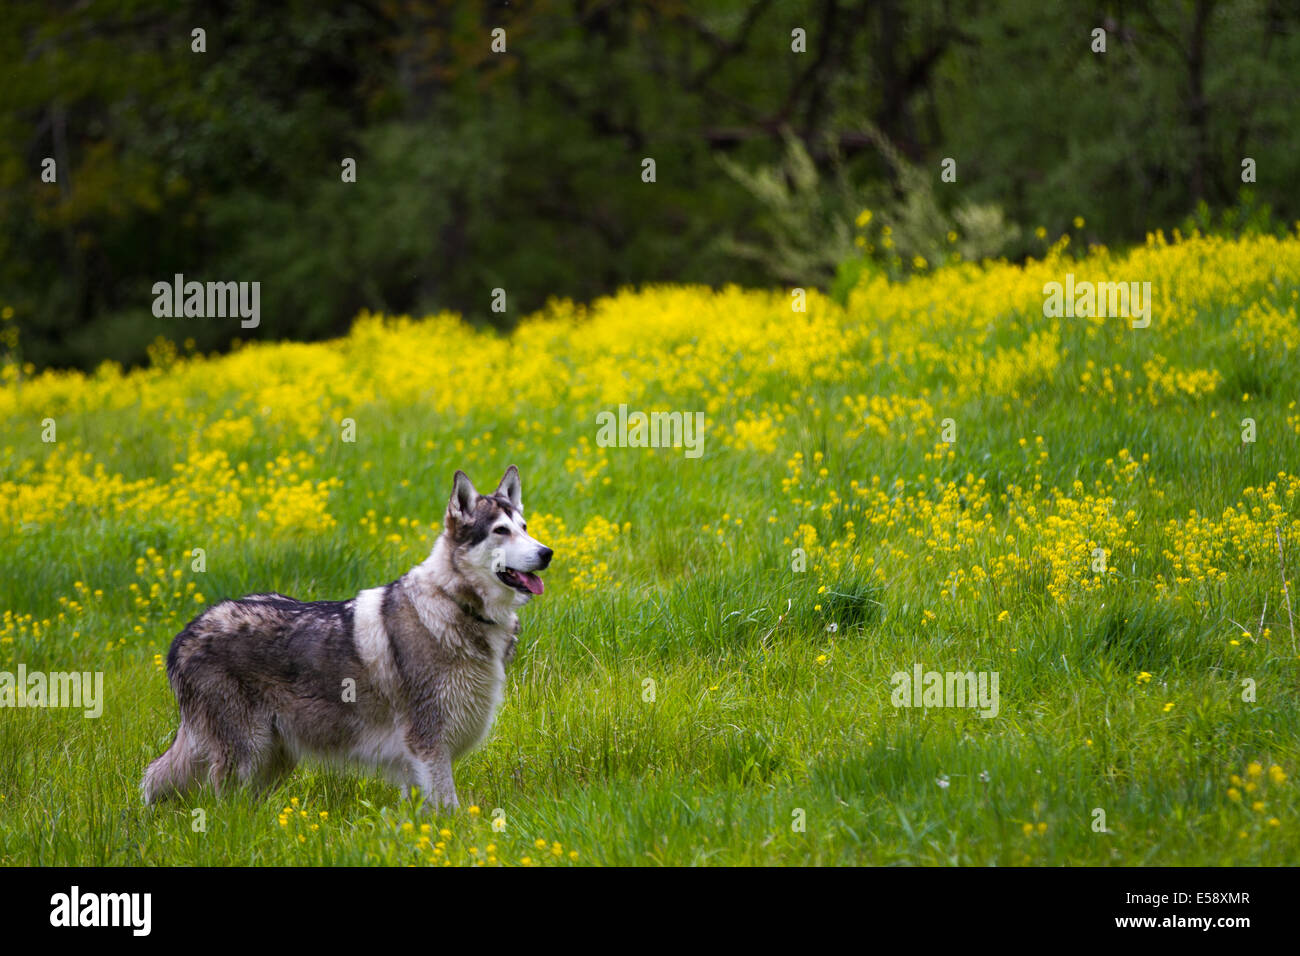 An Alaskan Malamute in a field of flowers Stock Photo